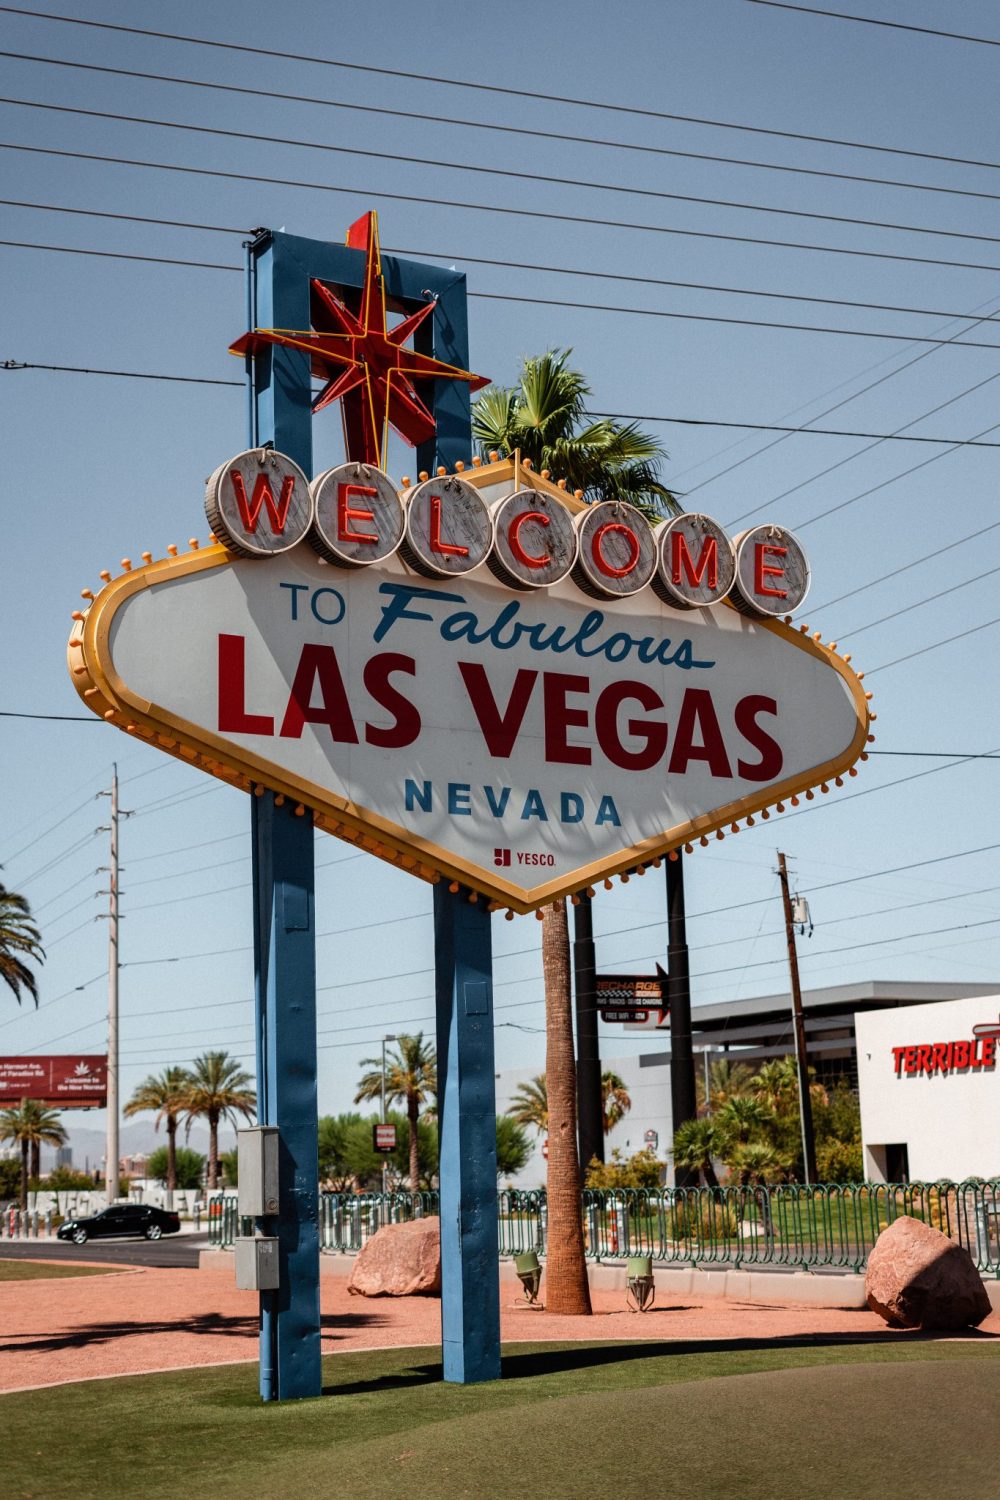 Top 5 Benefits of Living in Las Vegas